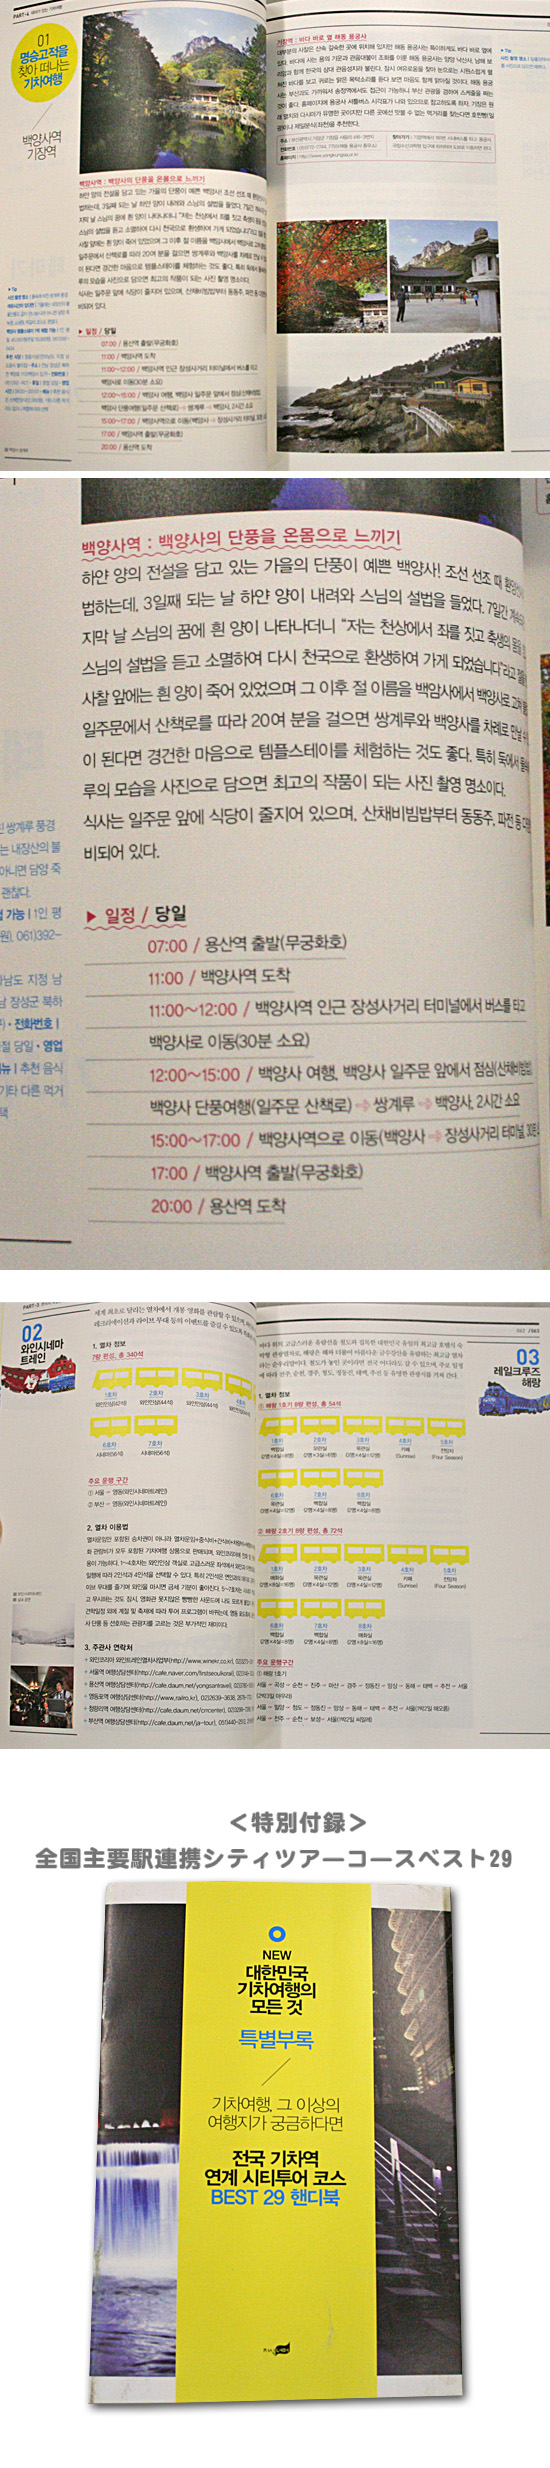 【韓国旅行本】大韓民国　汽車旅行の全て